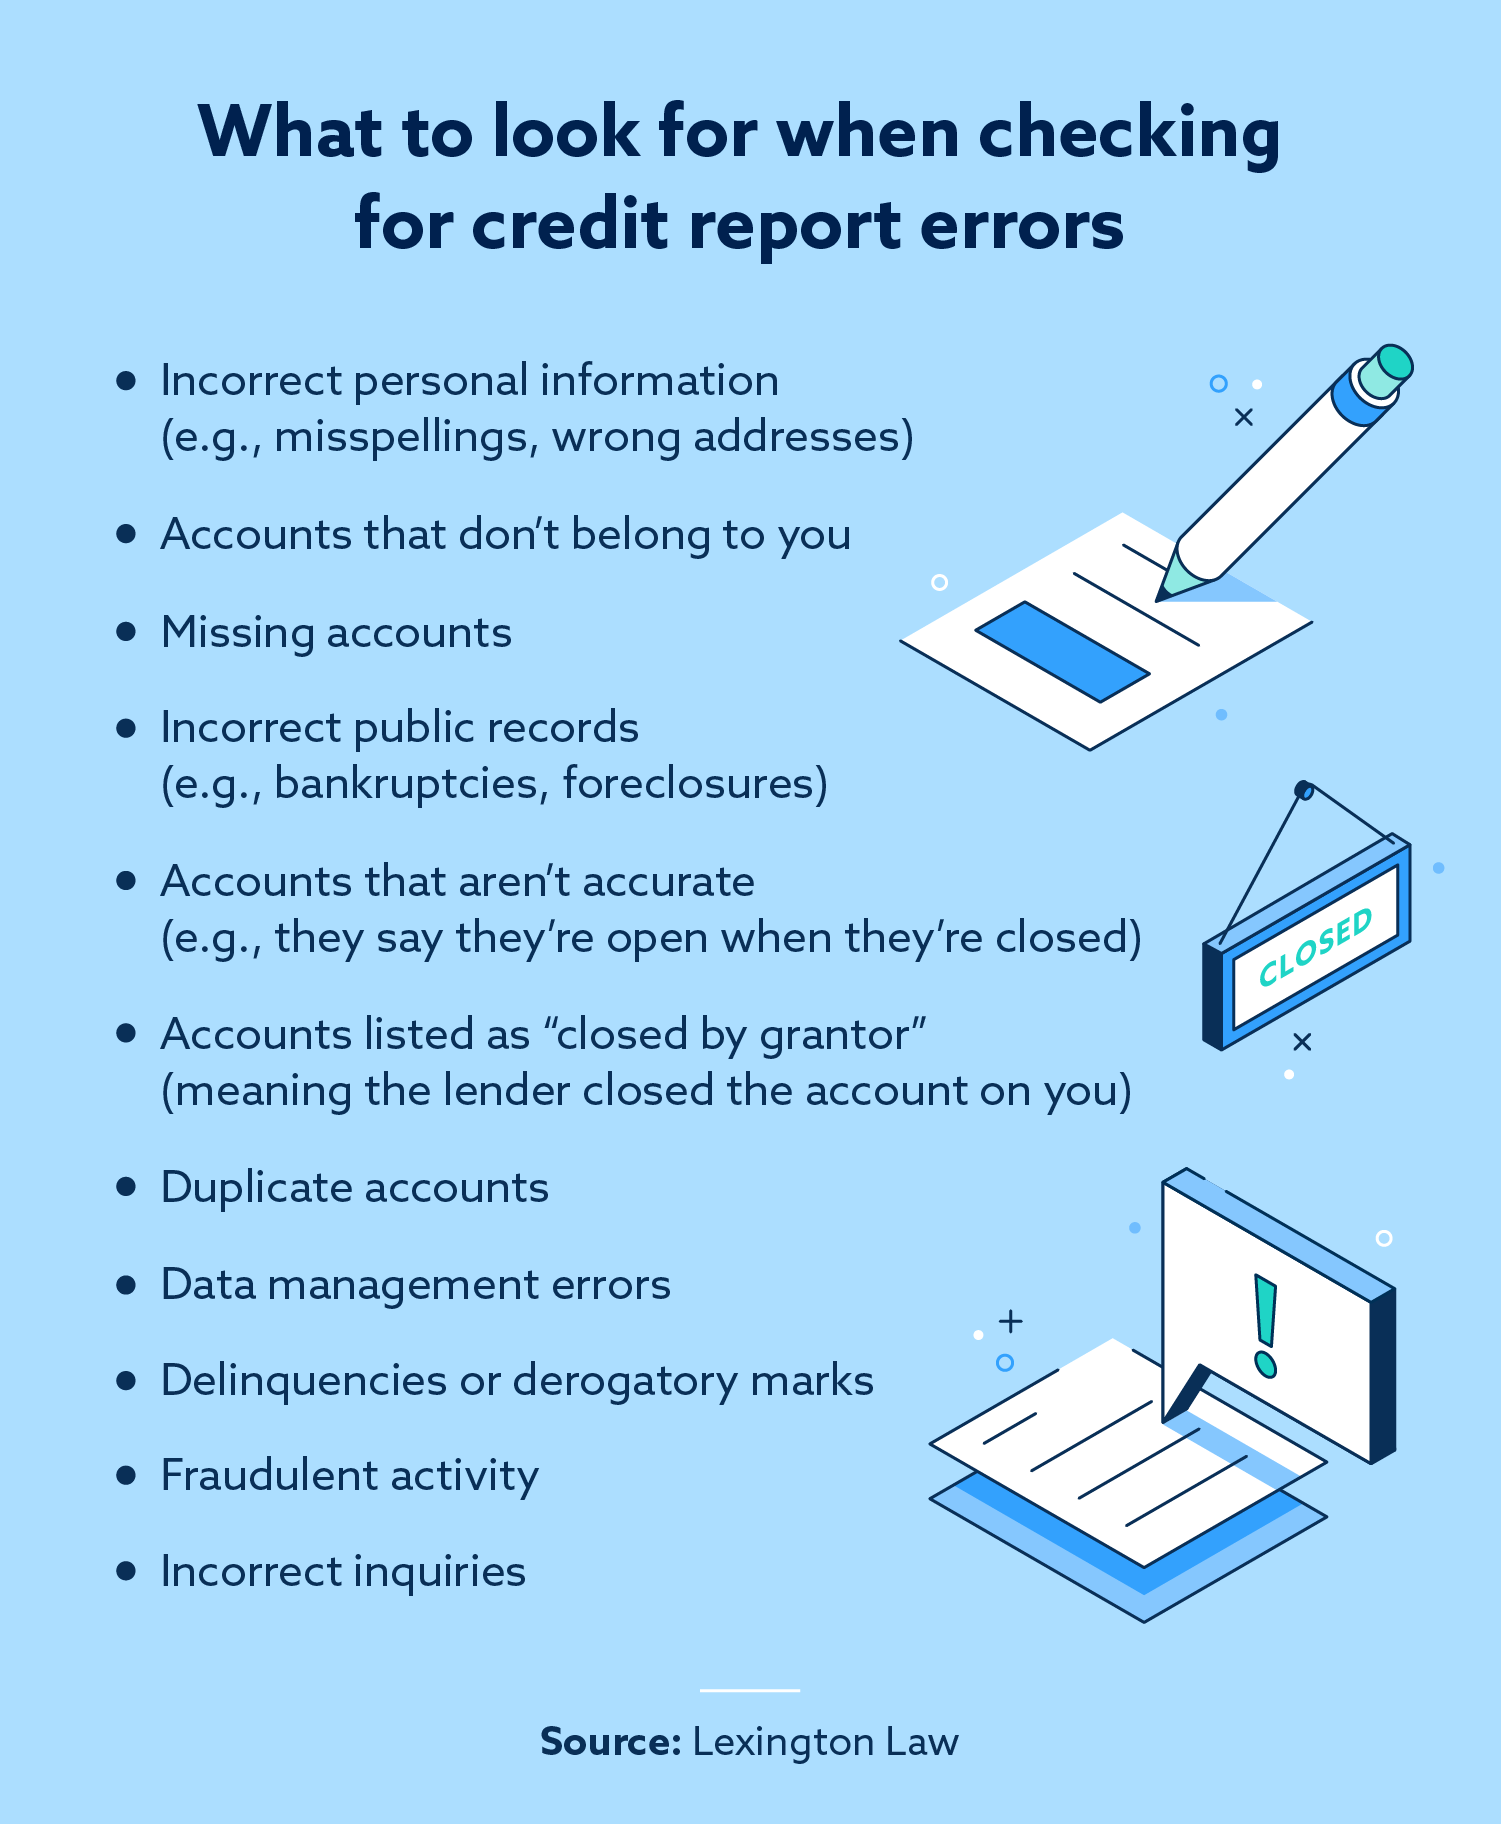 Tips for repairing credit